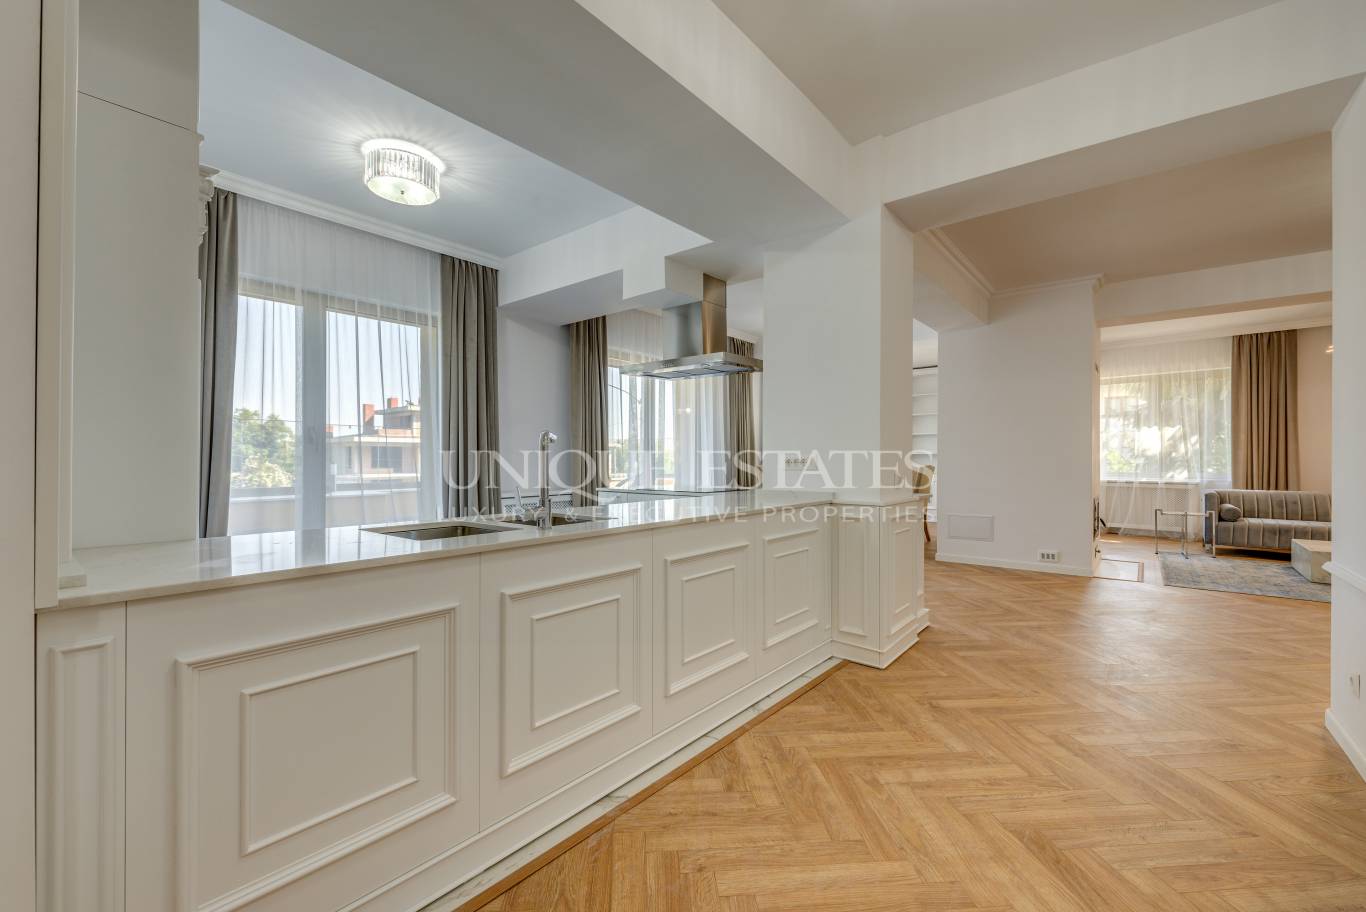 Апартамент под наем в София, Бояна - код на имота: N18890 - image 4